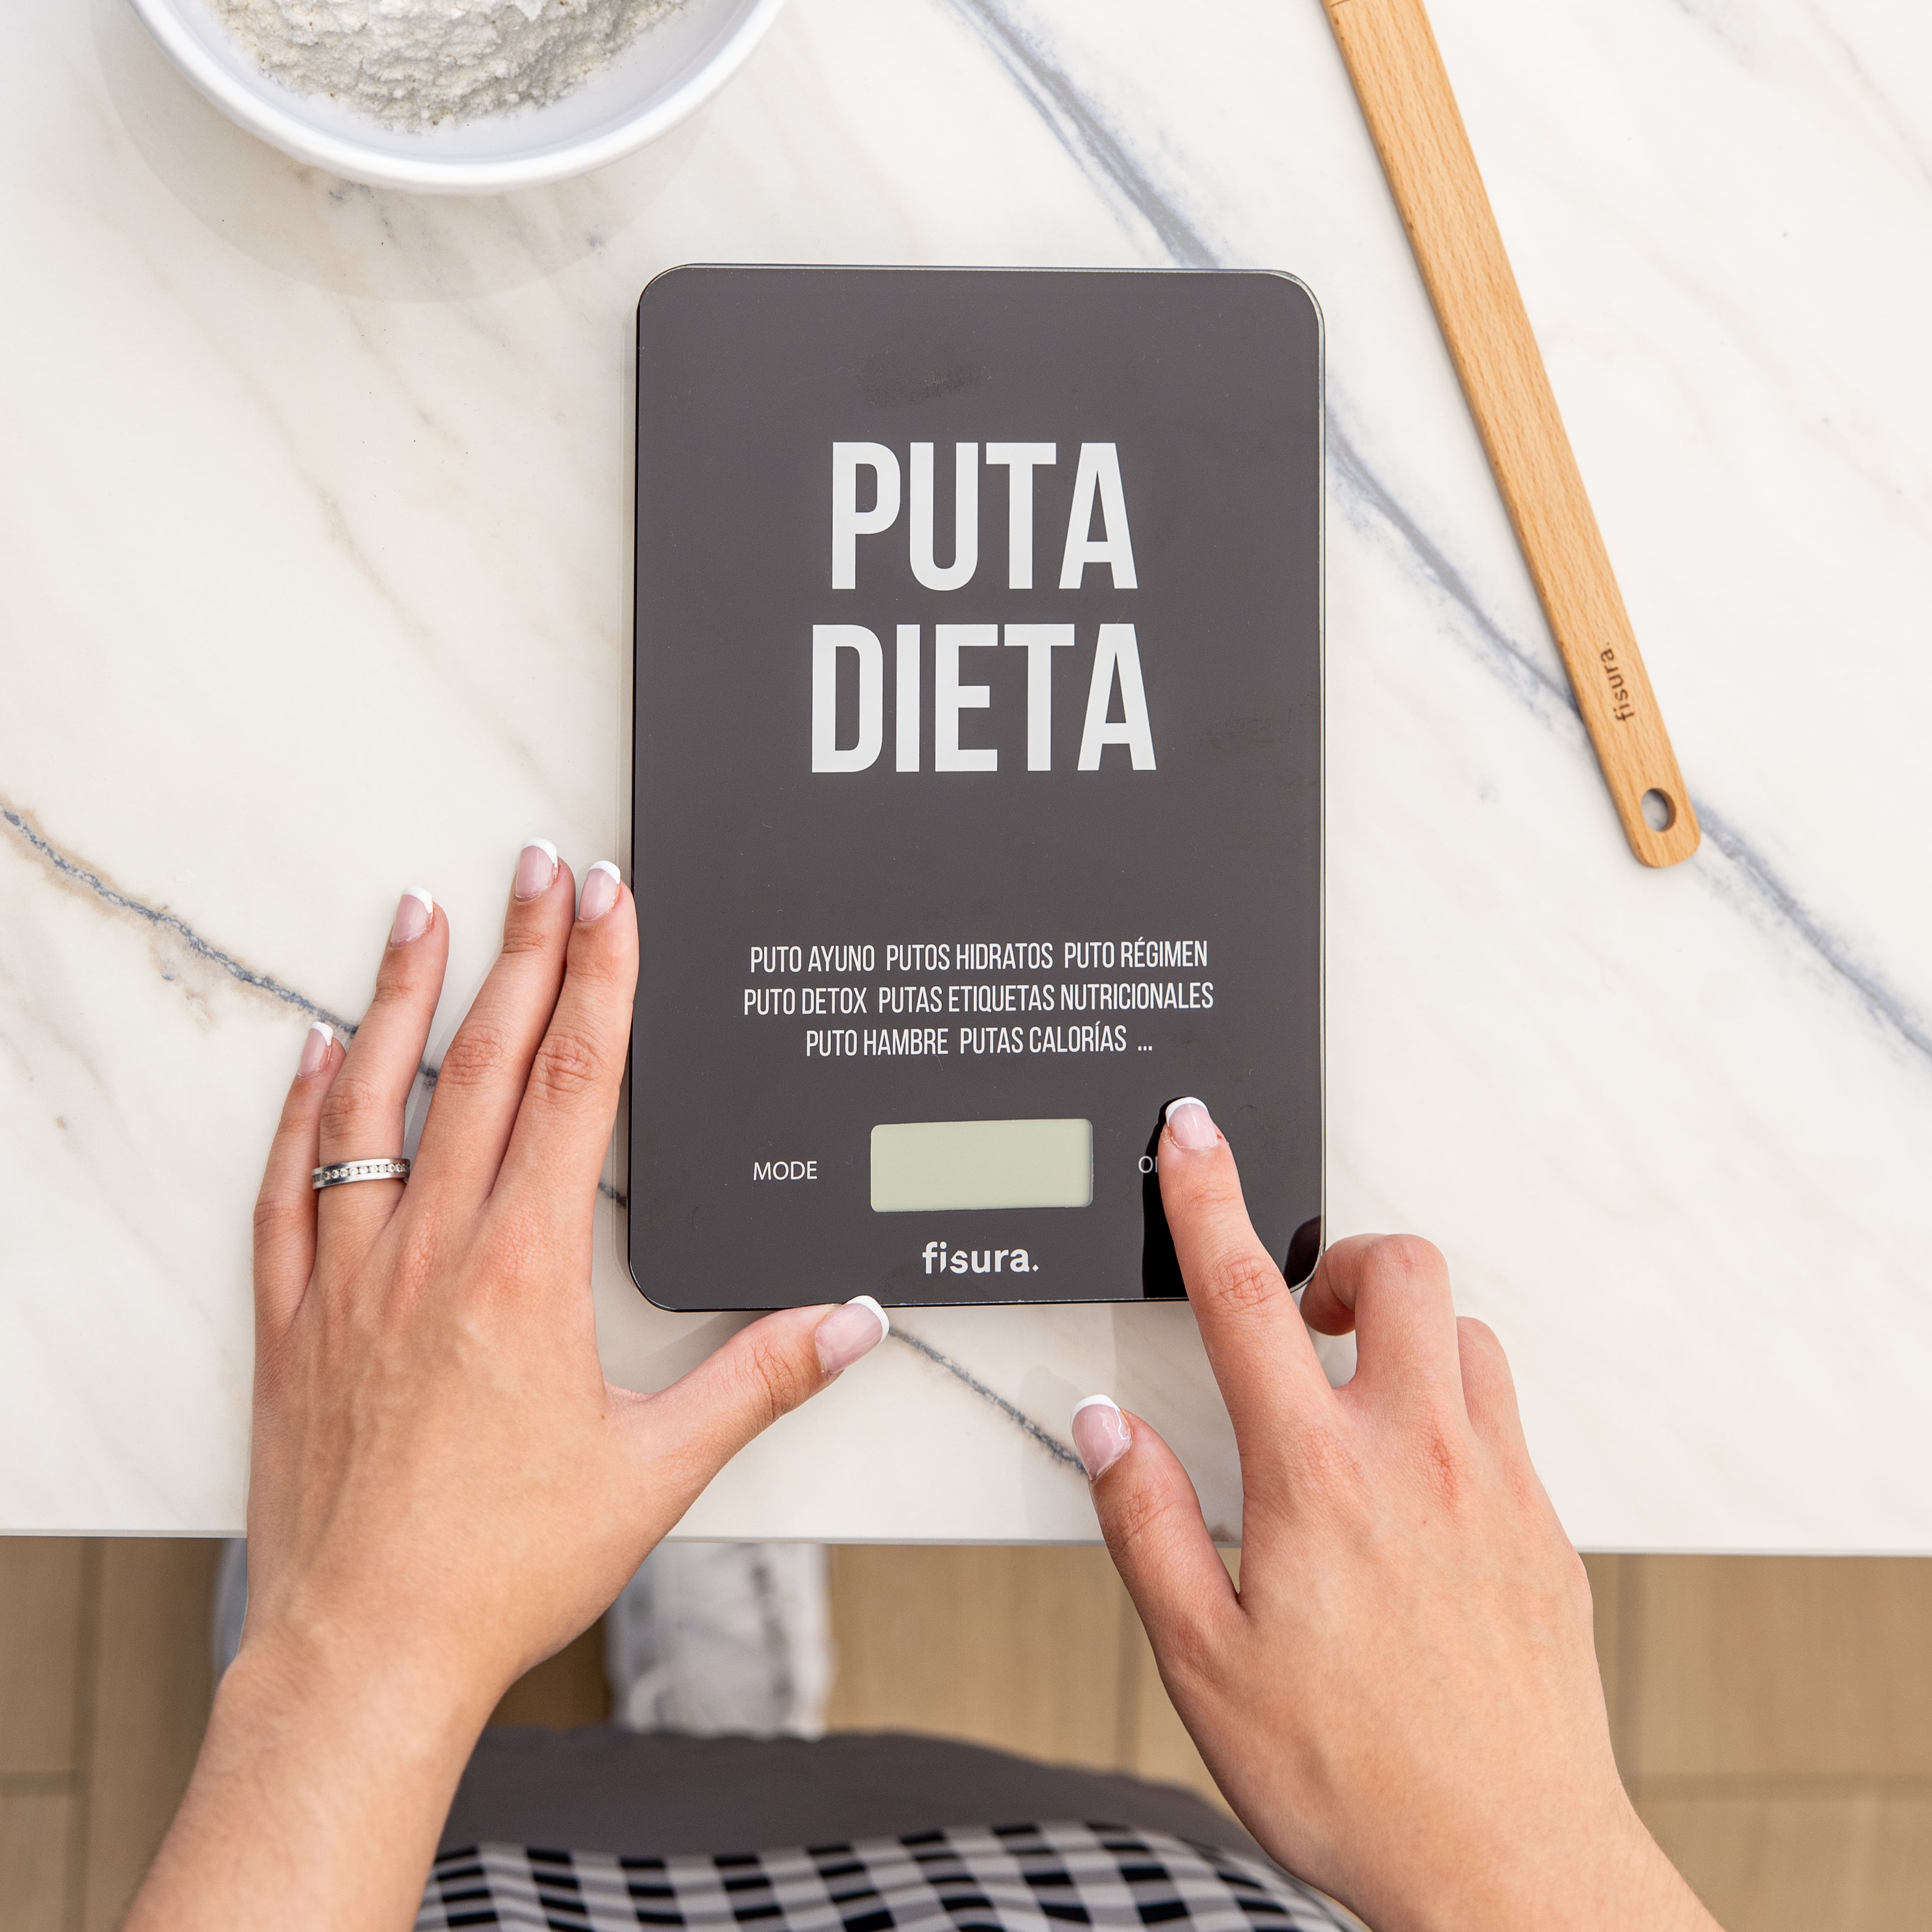 Báscula digital de cocina "puta dieta"